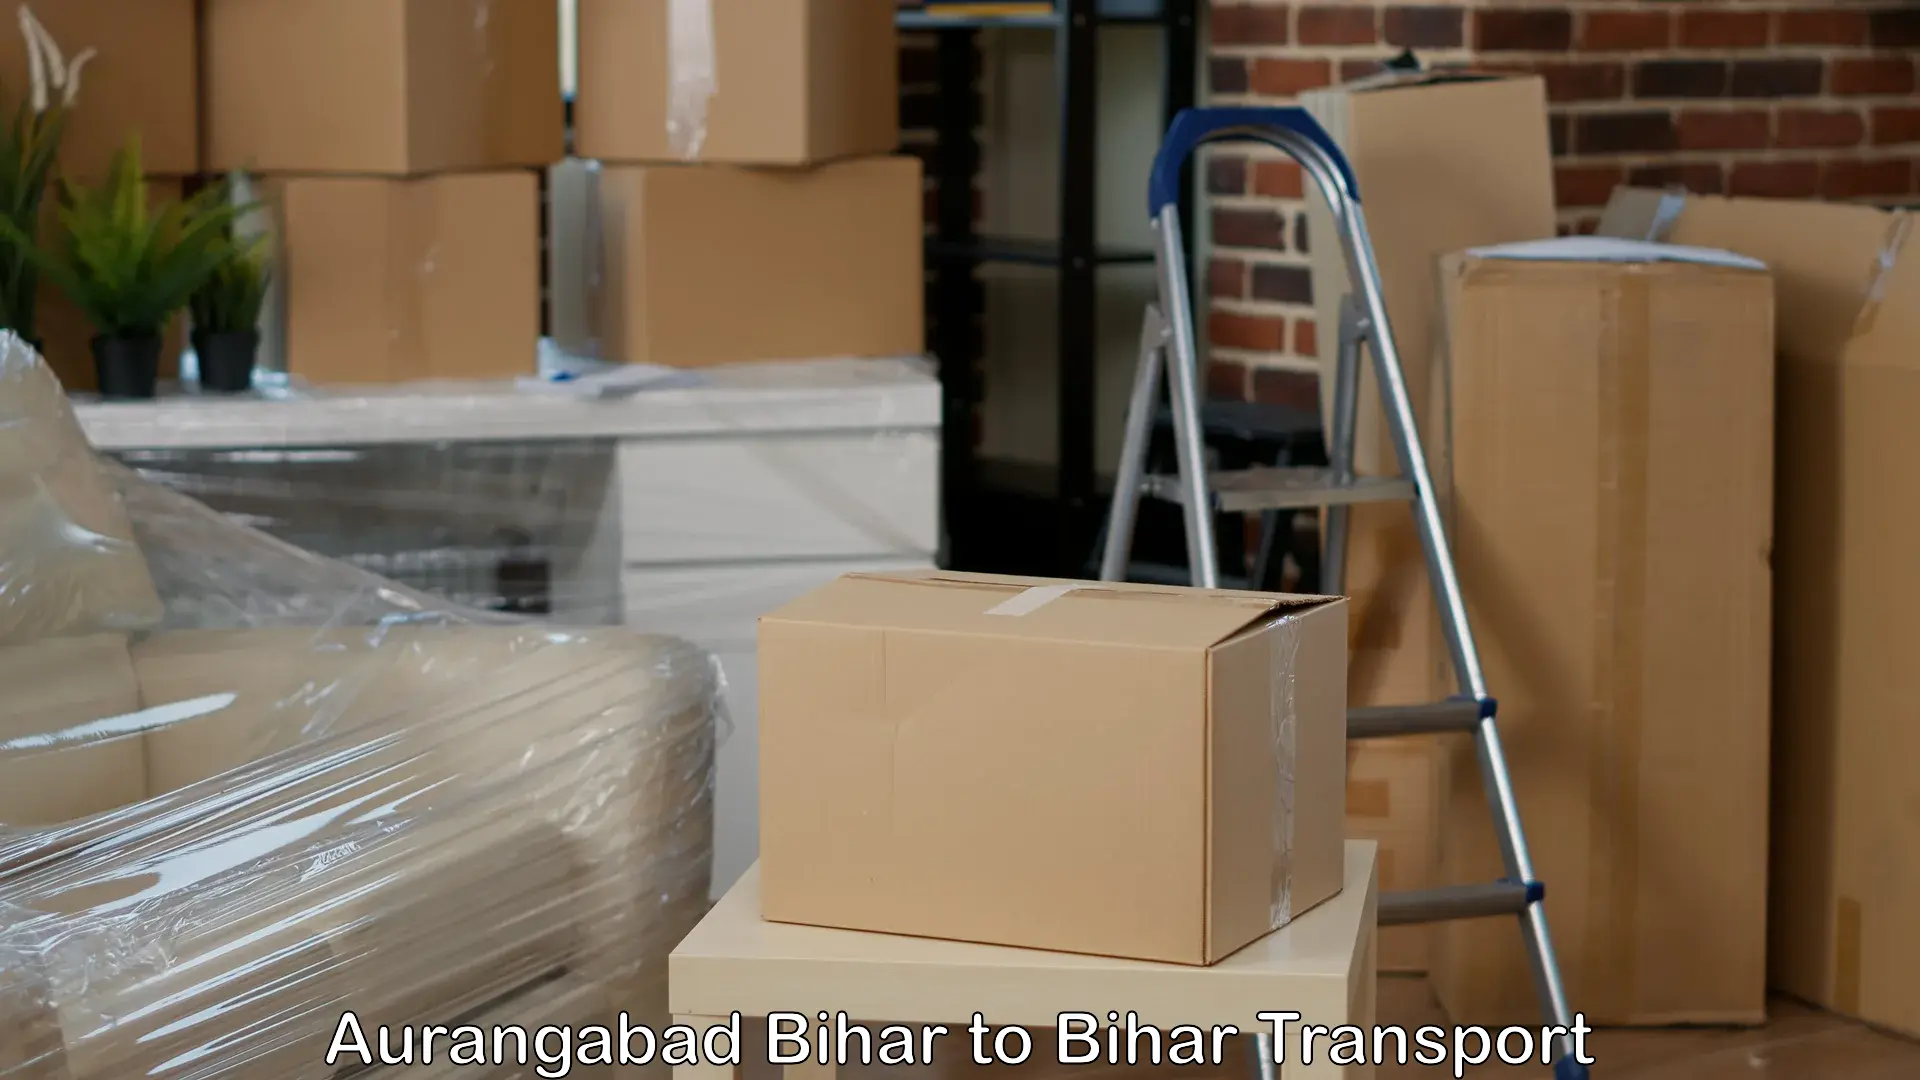 Goods delivery service Aurangabad Bihar to Sandesh